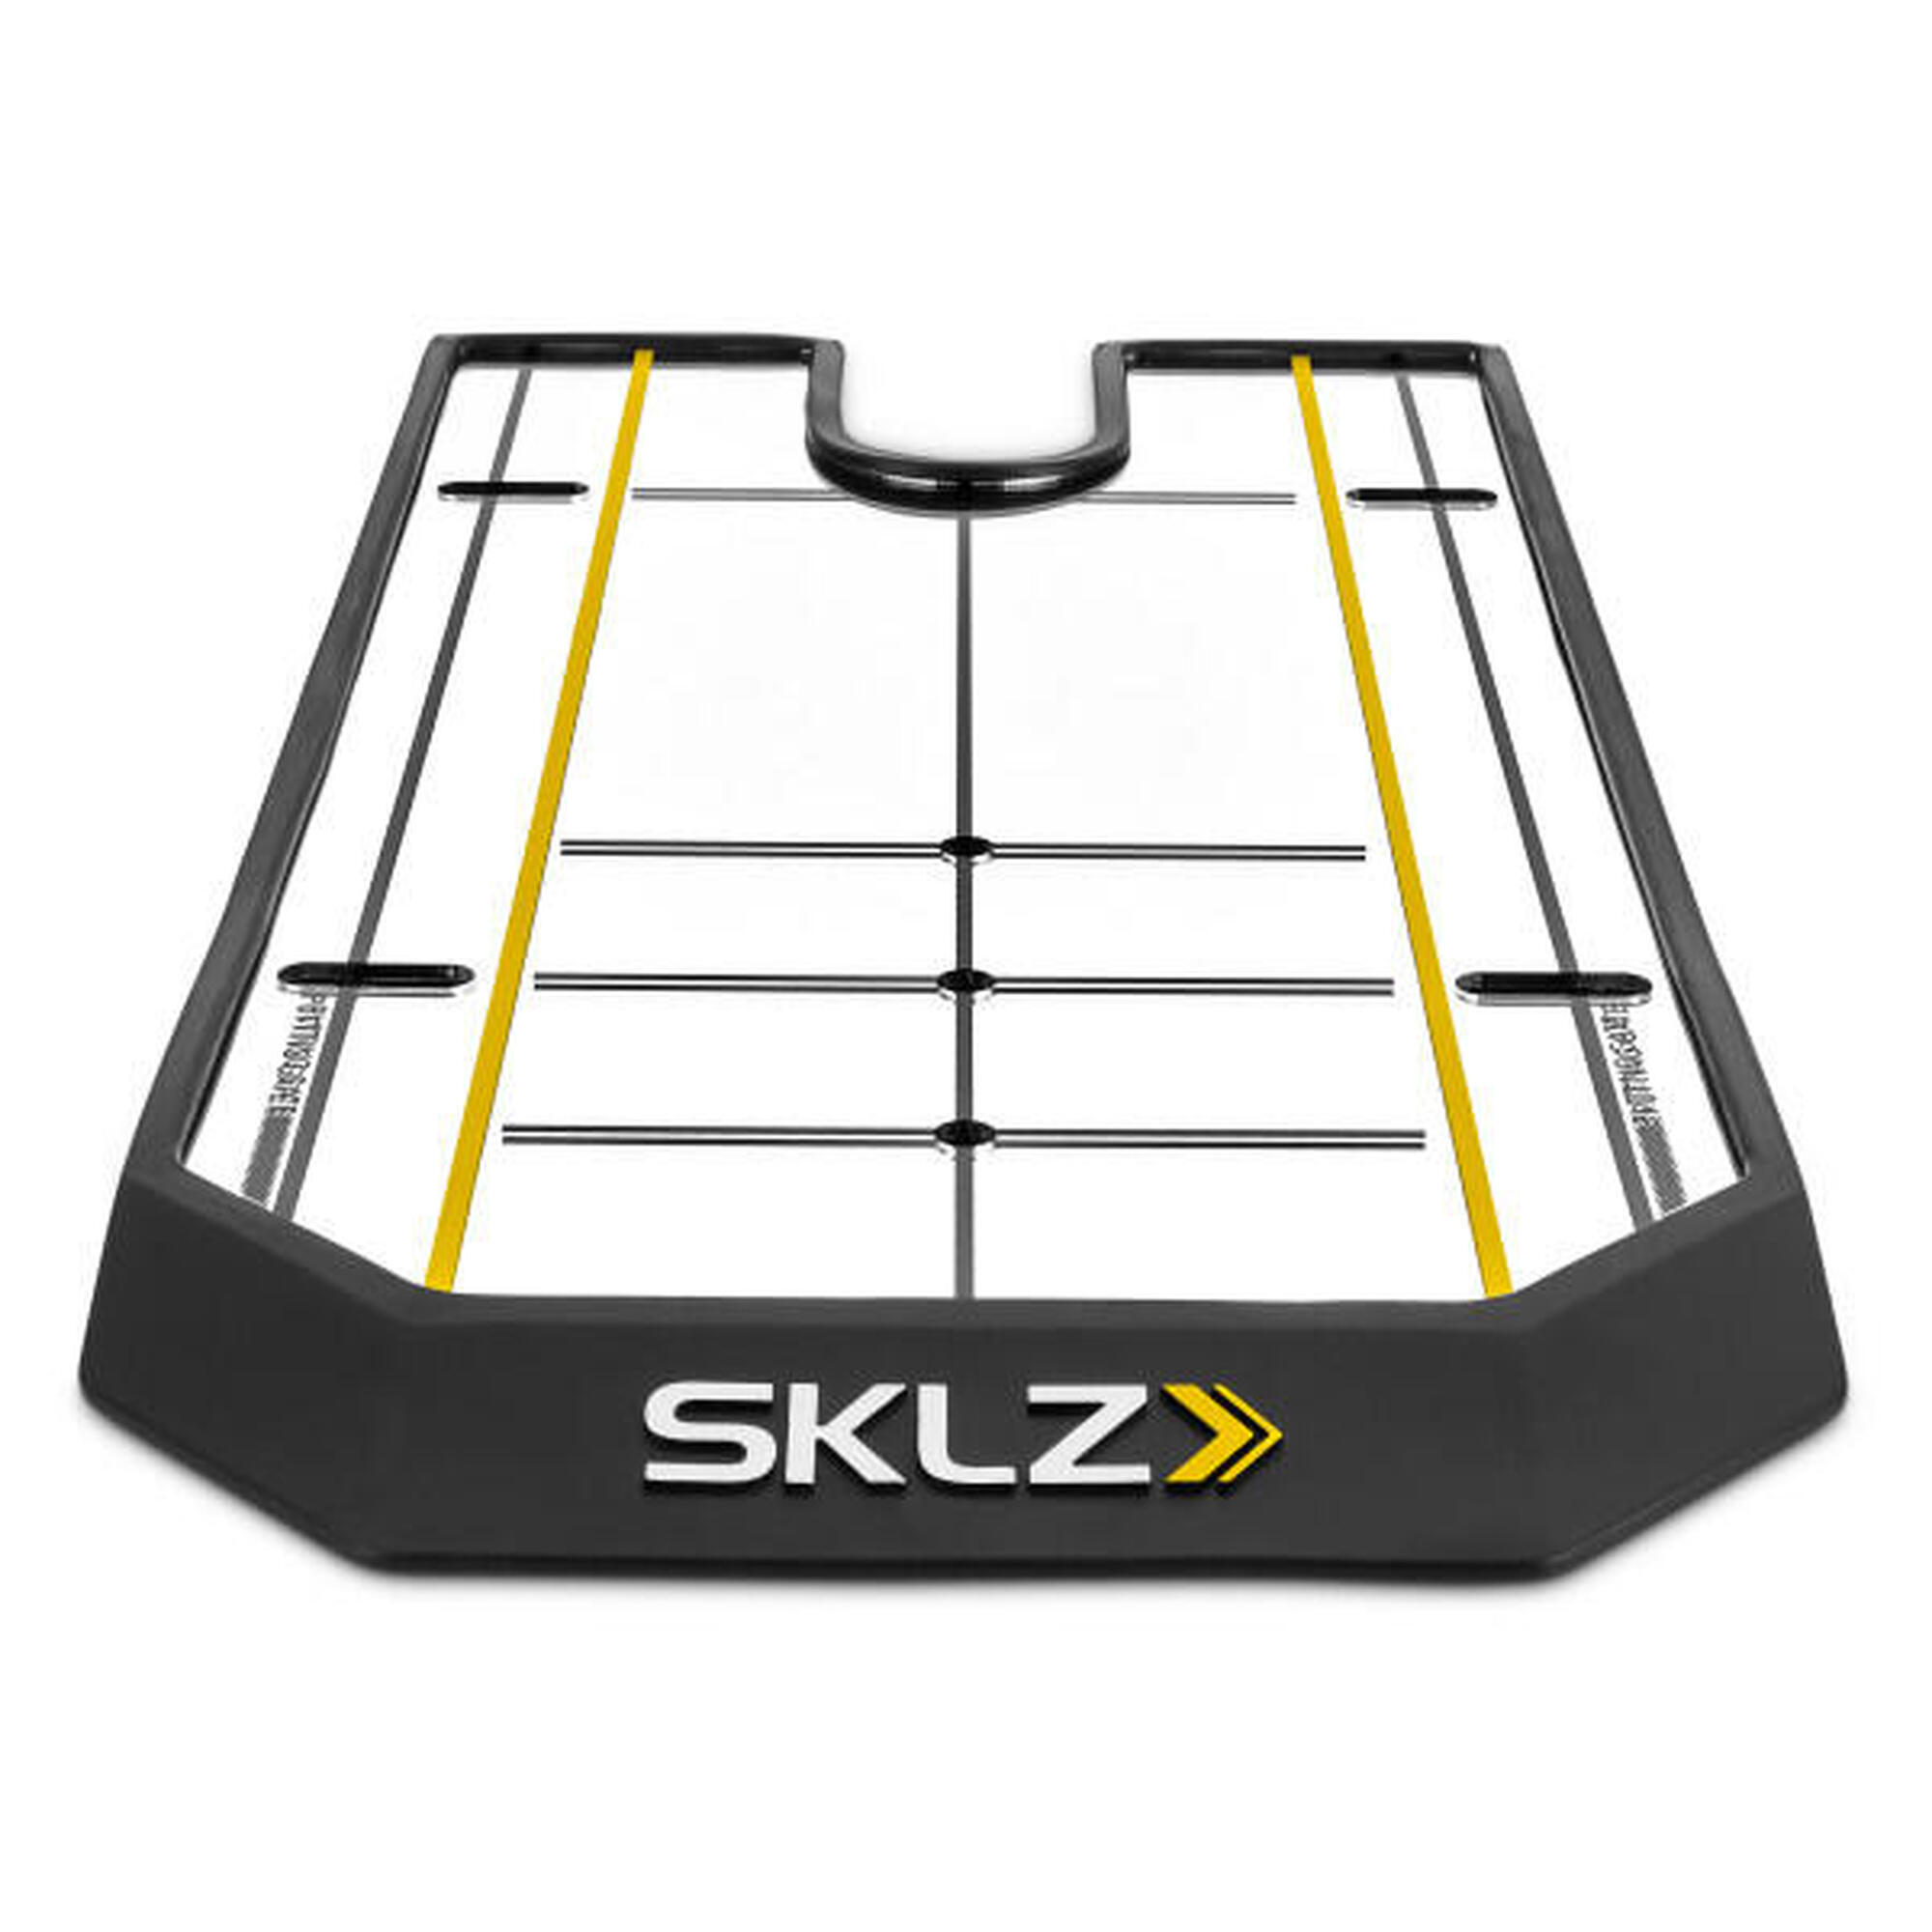 SKLZ -True Line Mirror: Aperfeiçoe o seu putting para um alinhamento consistente